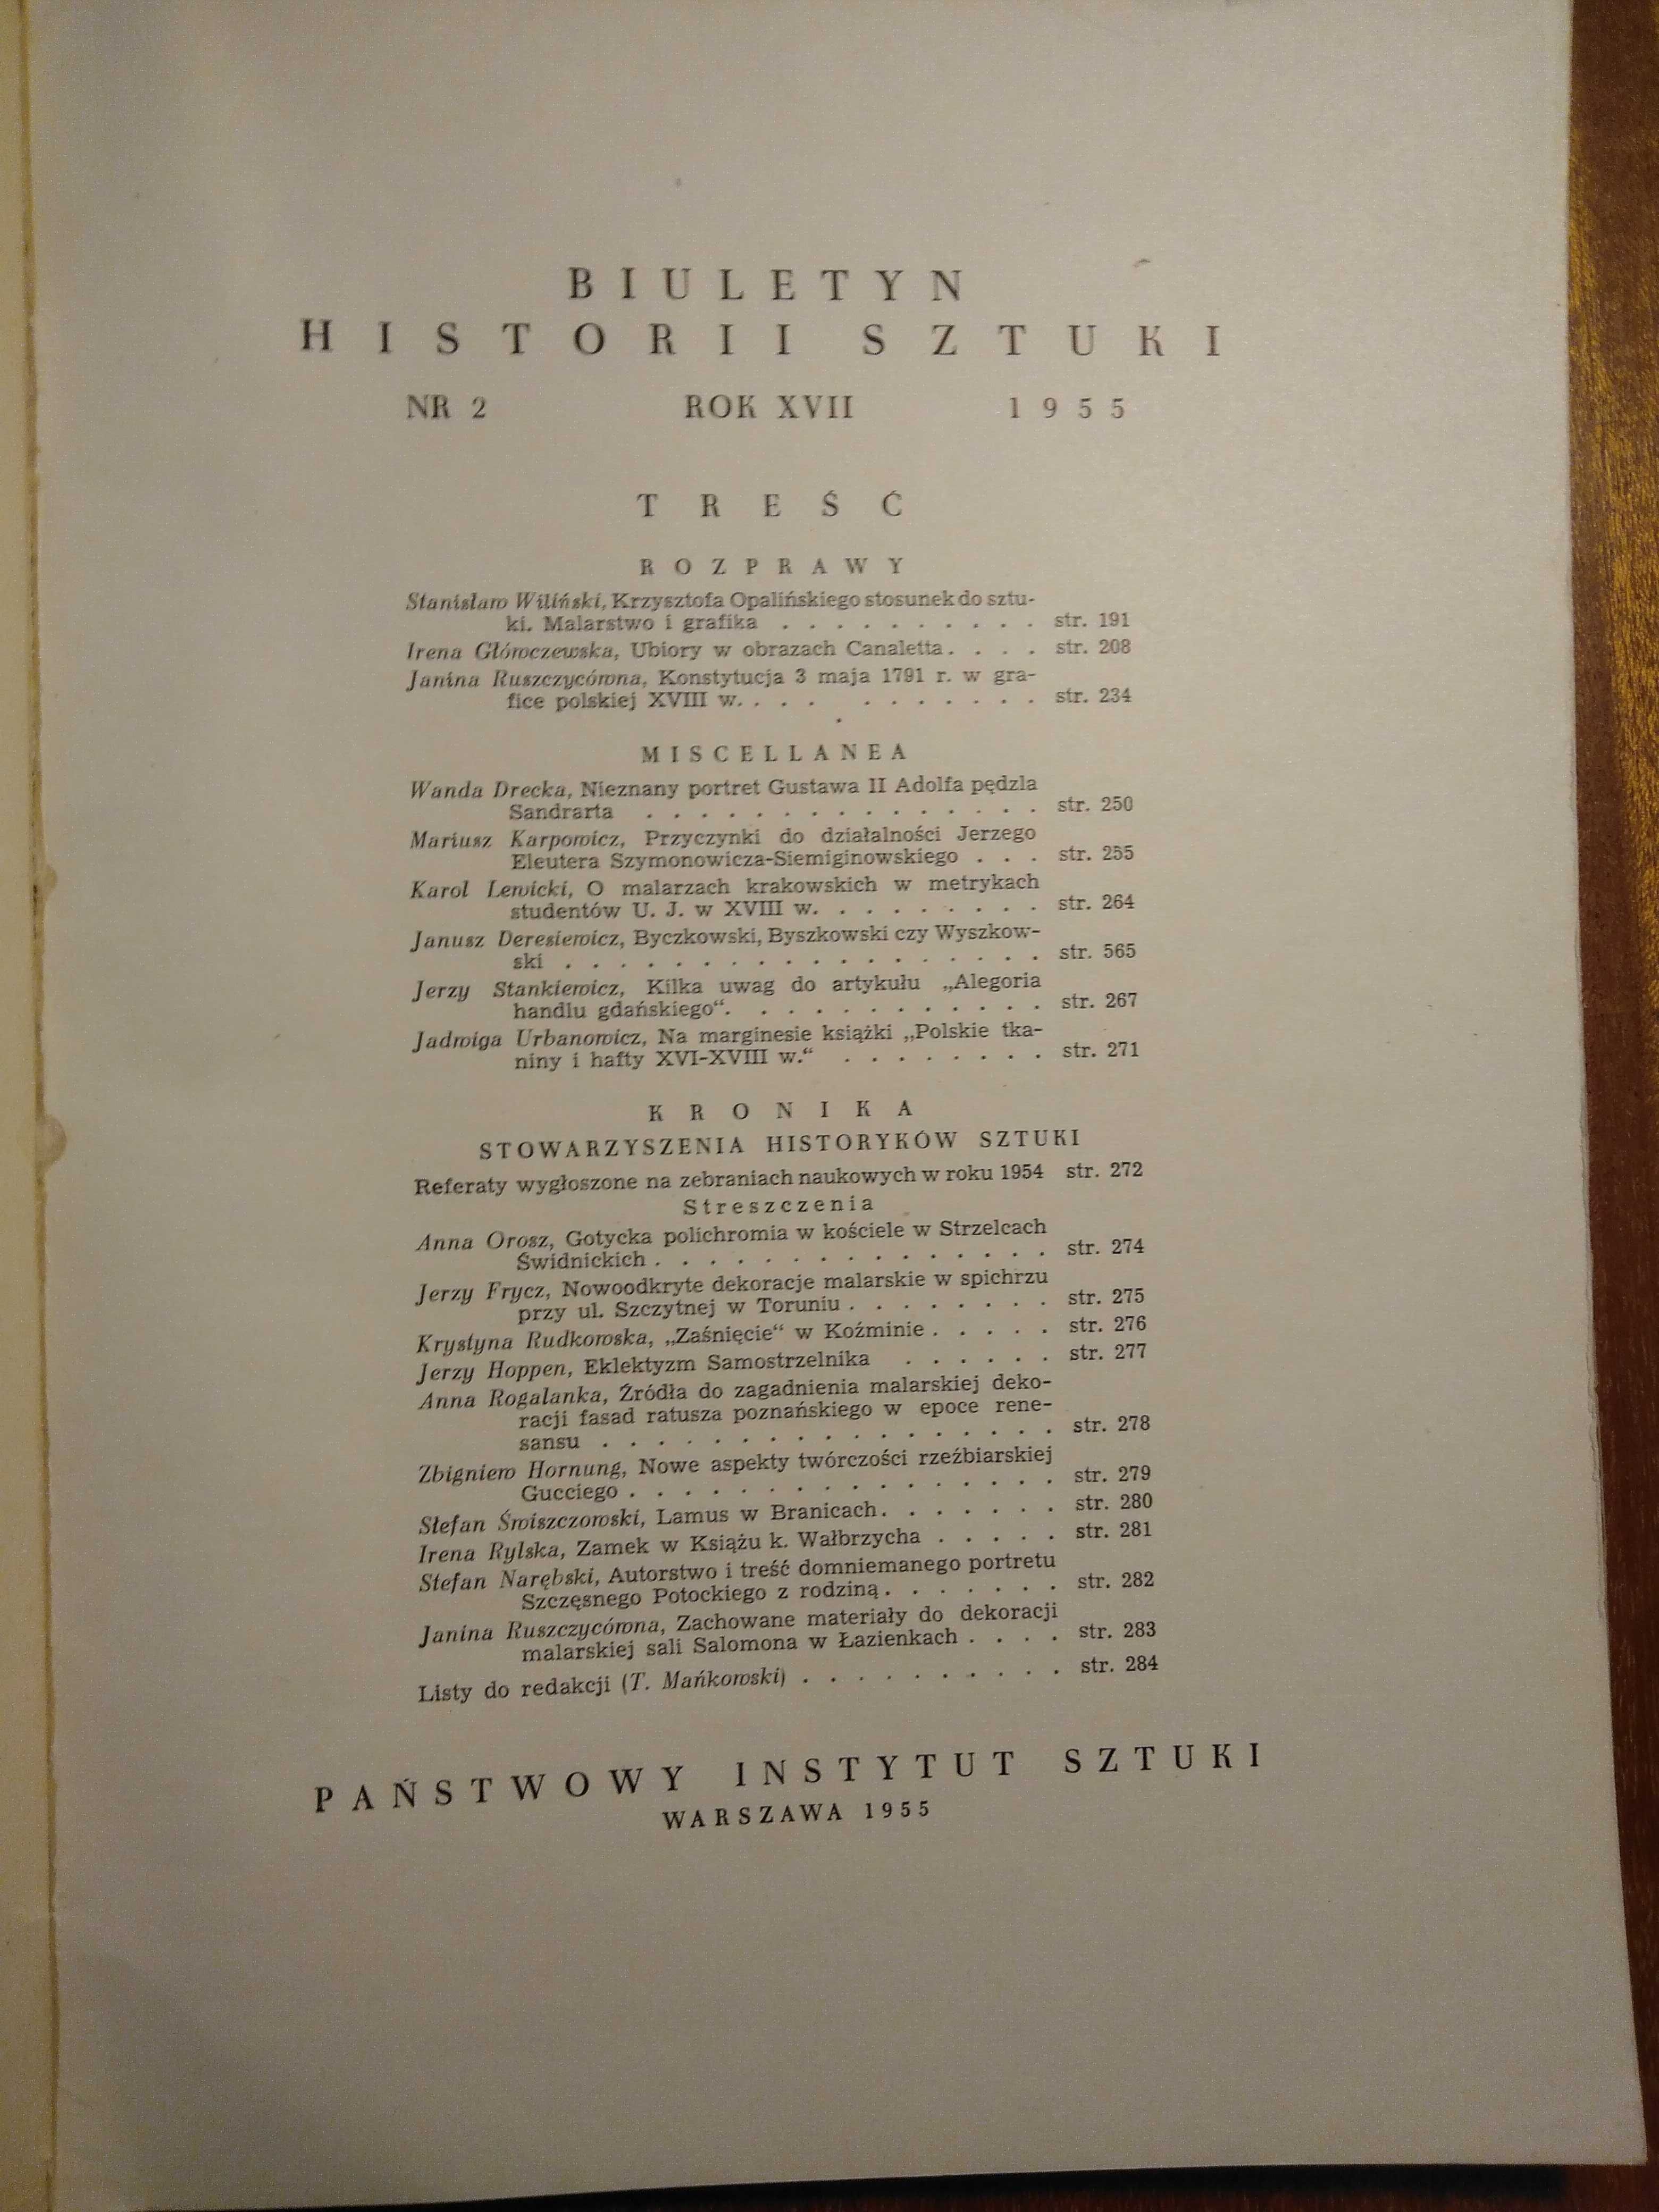 Biuletyn Historii Sztuki - 1955/56 - 5 zeszytów